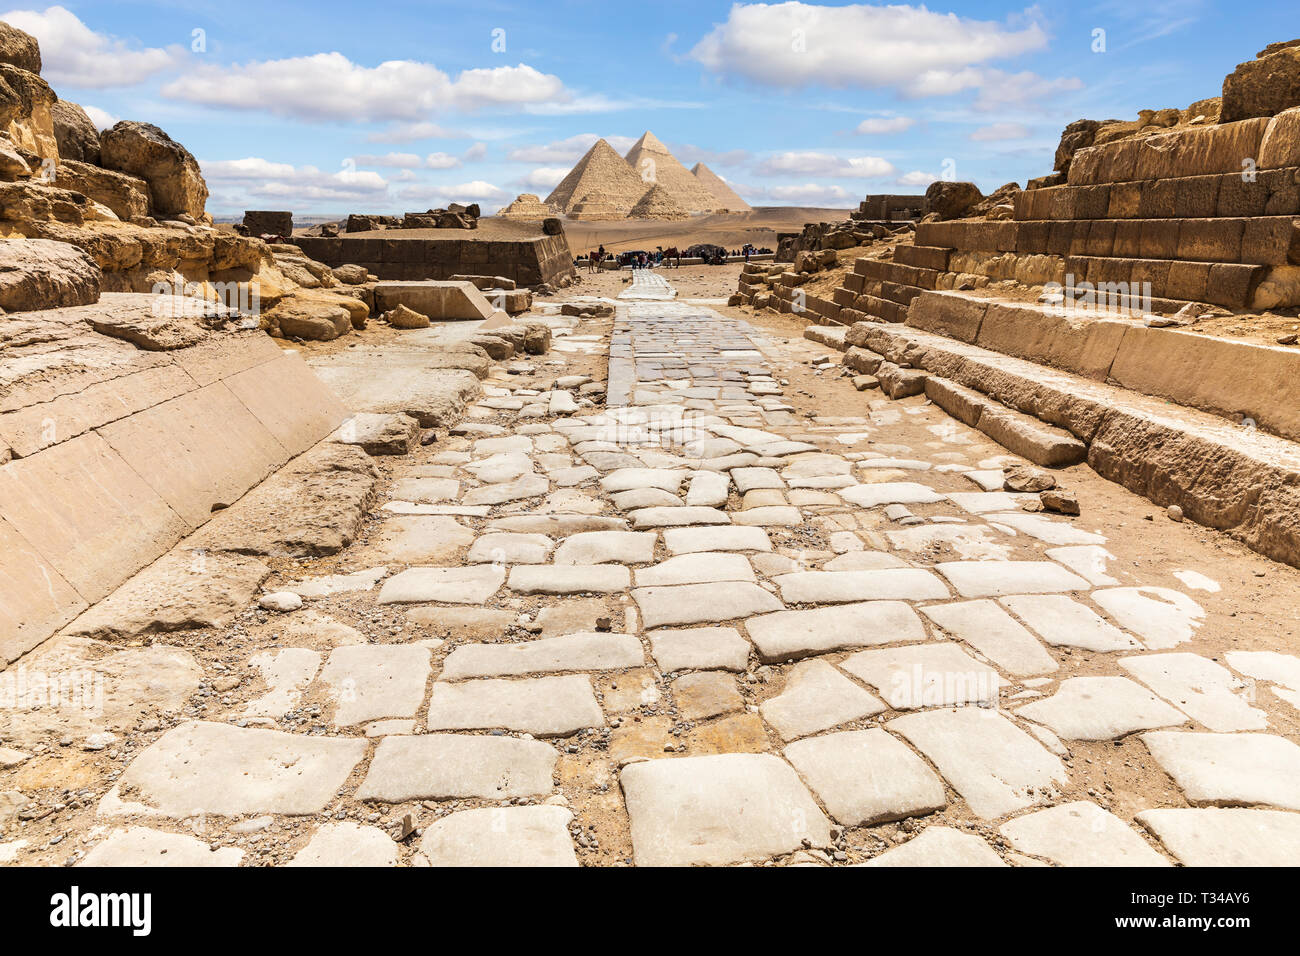 Las ruinas del Templo de Giza y el camino a las grandes pirámides de Egipto. Foto de stock